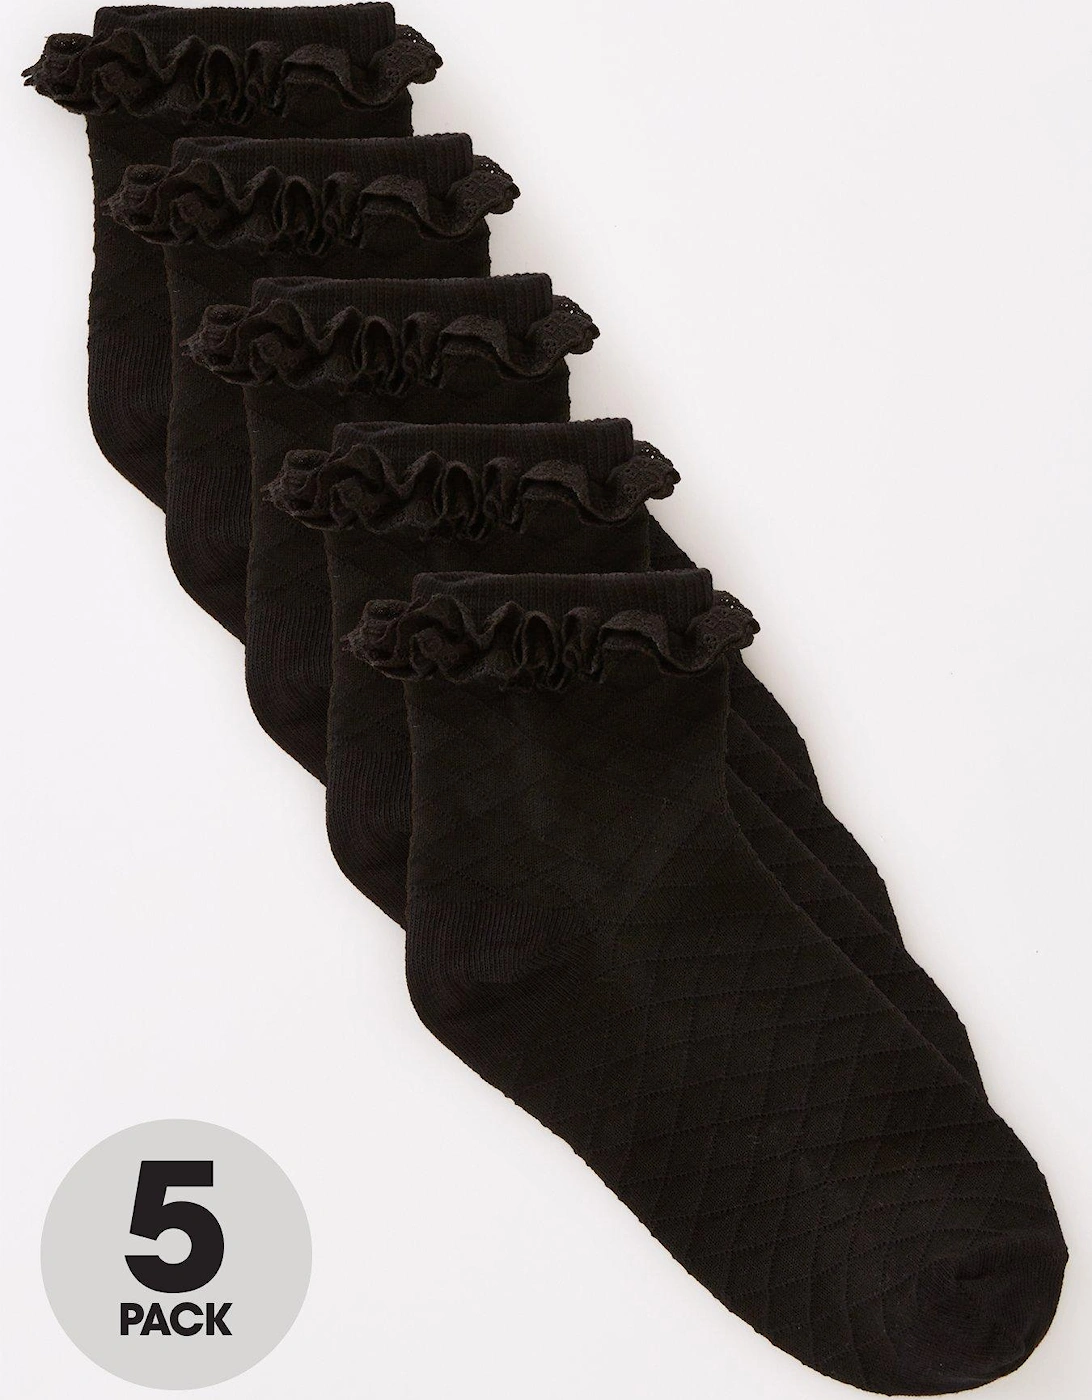 Girls 5 Pack Black Frill Socks - Black, 2 of 1